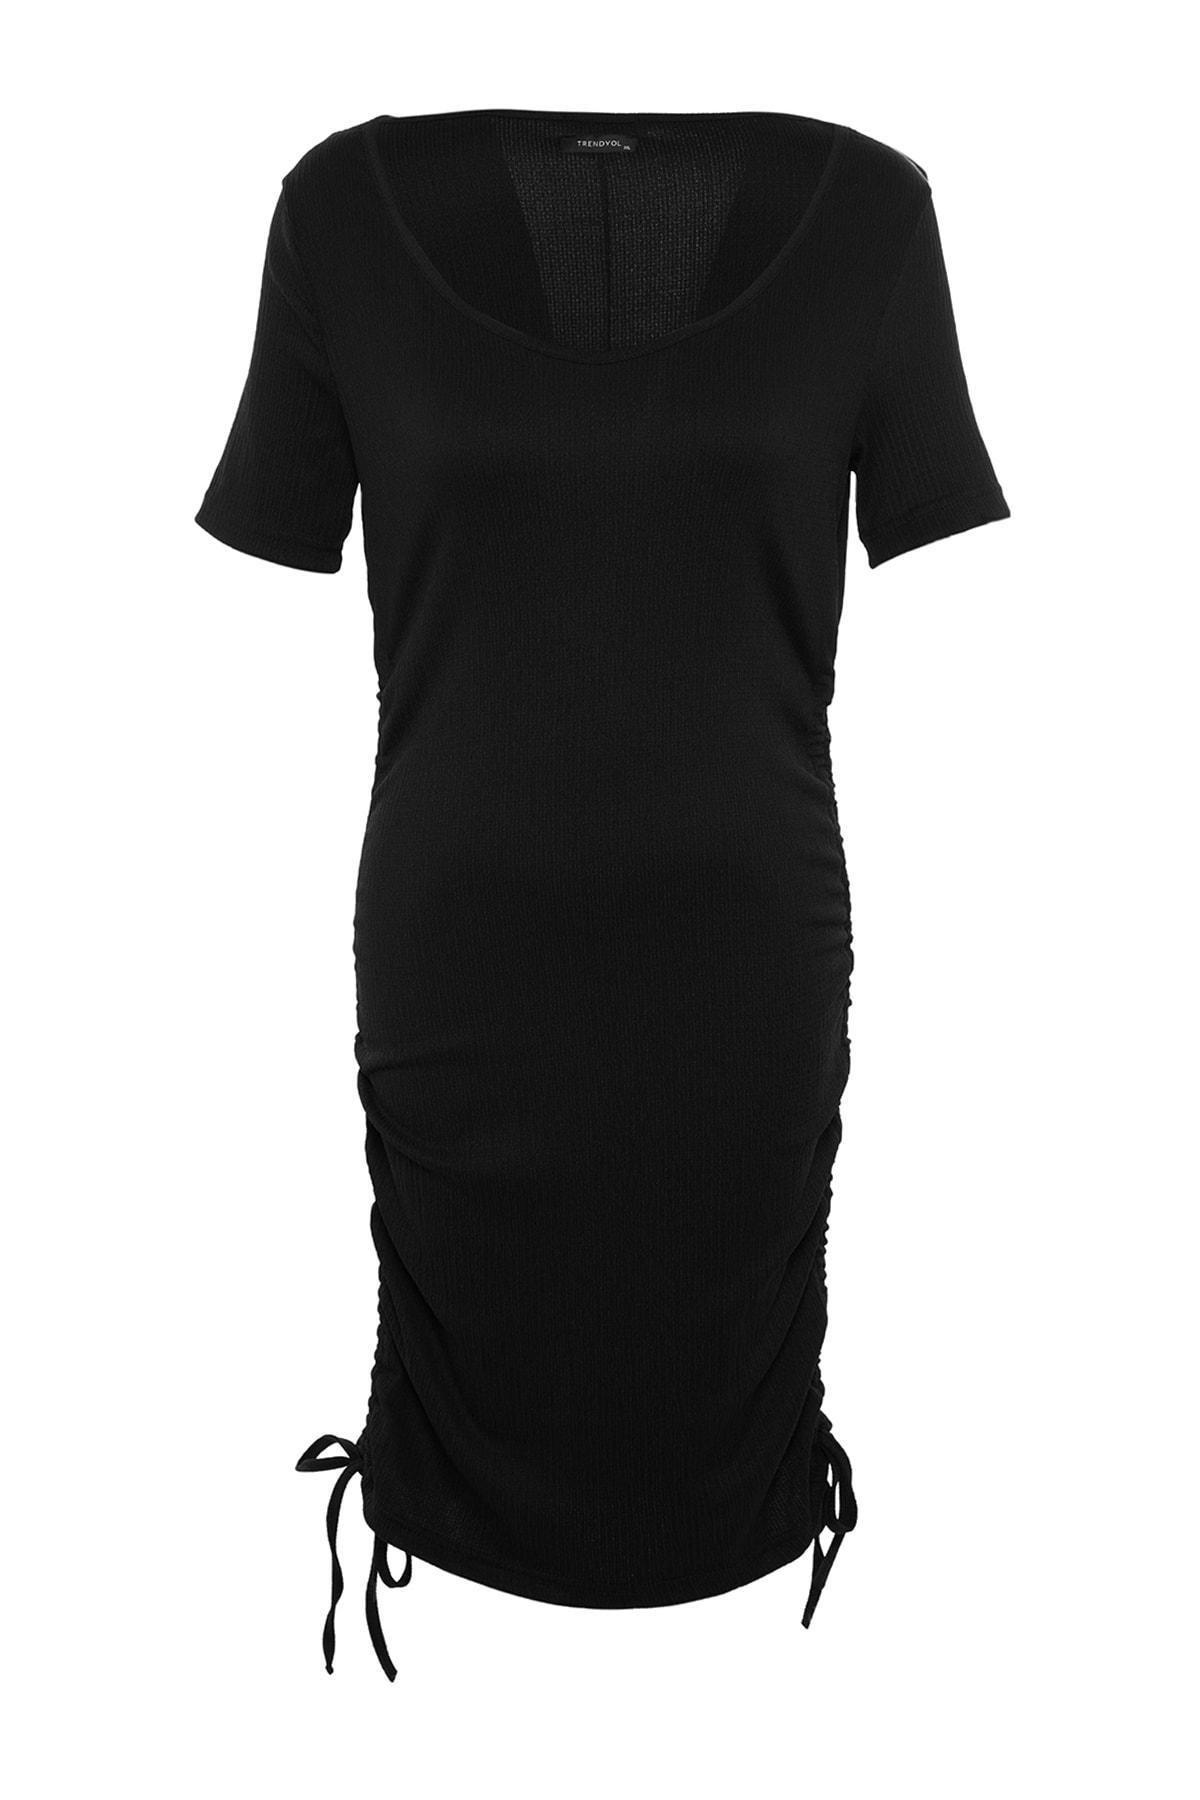 Trendyol - Black Mermaid Plus Size Dress